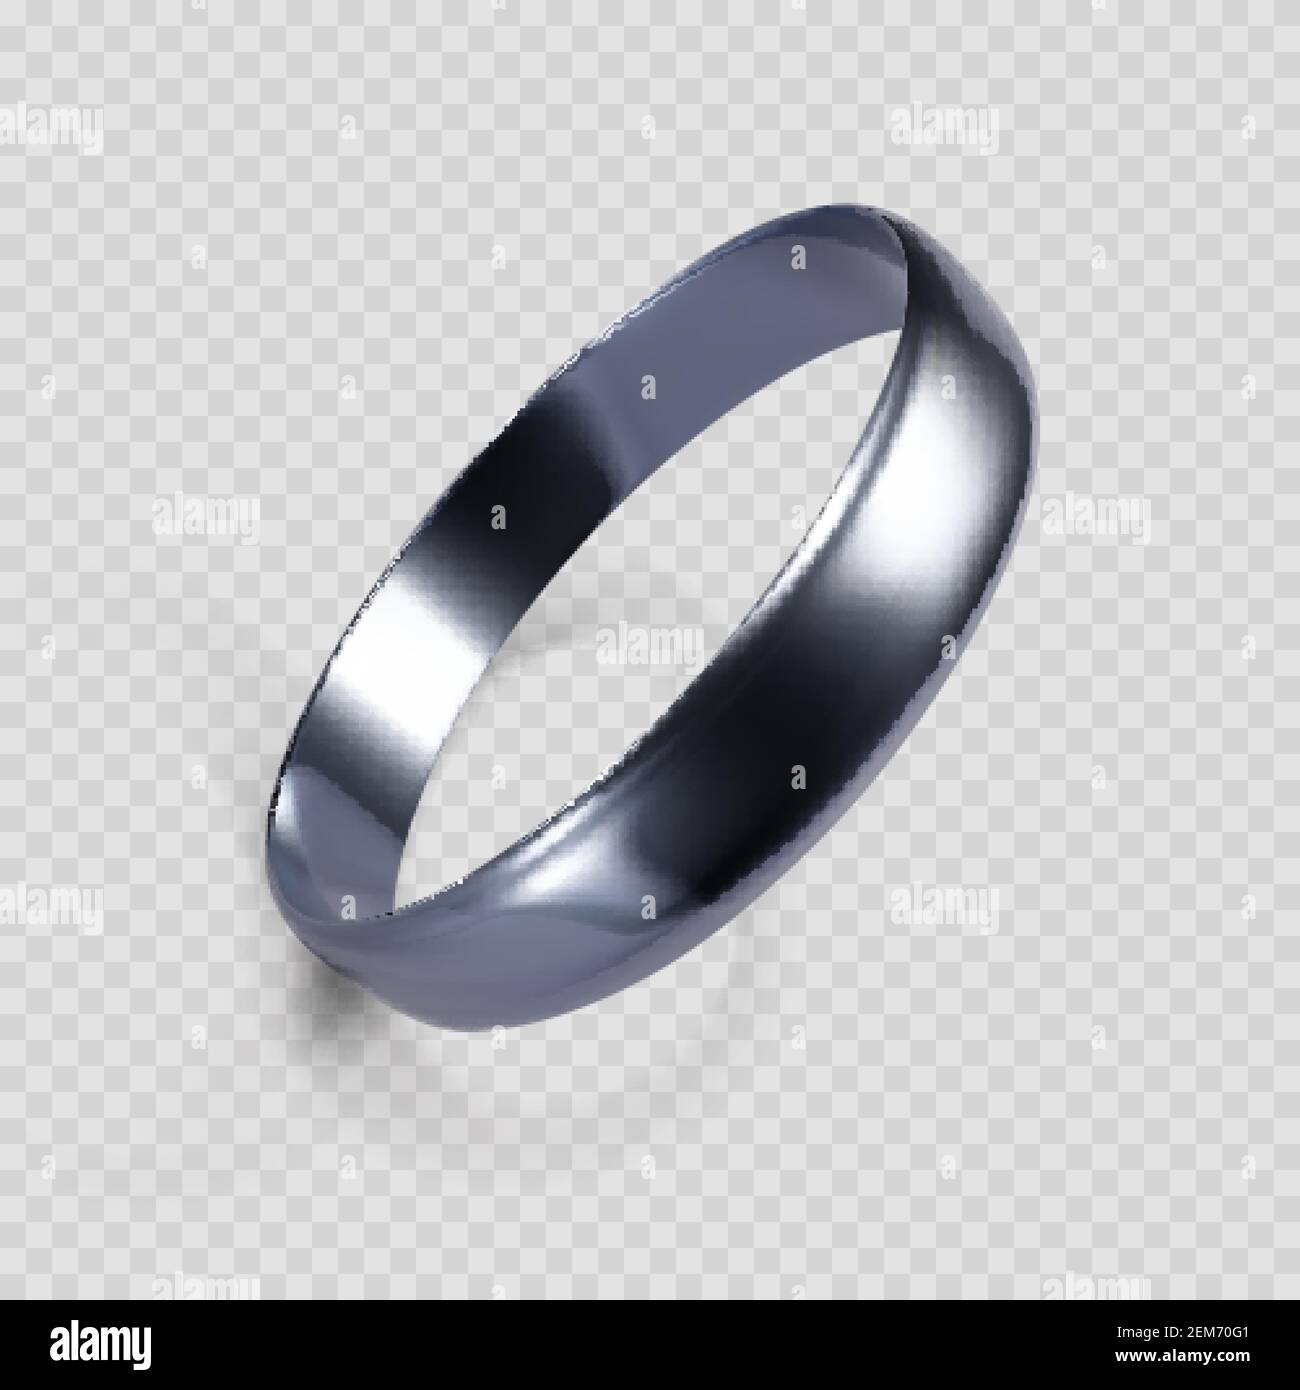 Anello realistico in oro bianco o argento. Rendering 3D dell'anello in platino. Illustrazione vettoriale isolata su sfondo trasparente Illustrazione Vettoriale